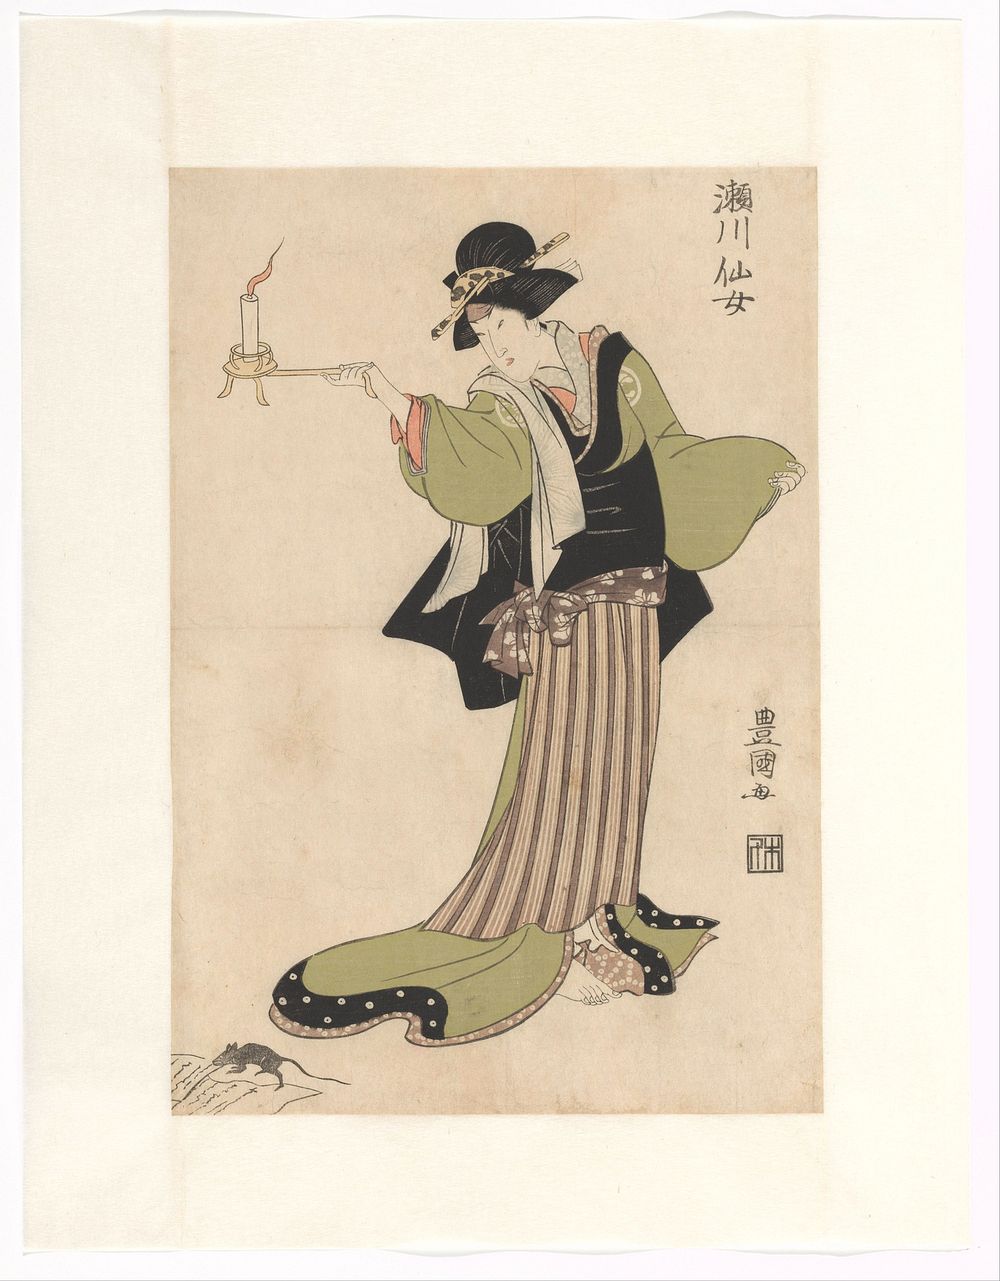 Segawa Senjo in the role of nurse Masaoka (c. 1810) by Utagawa Toyokuni I